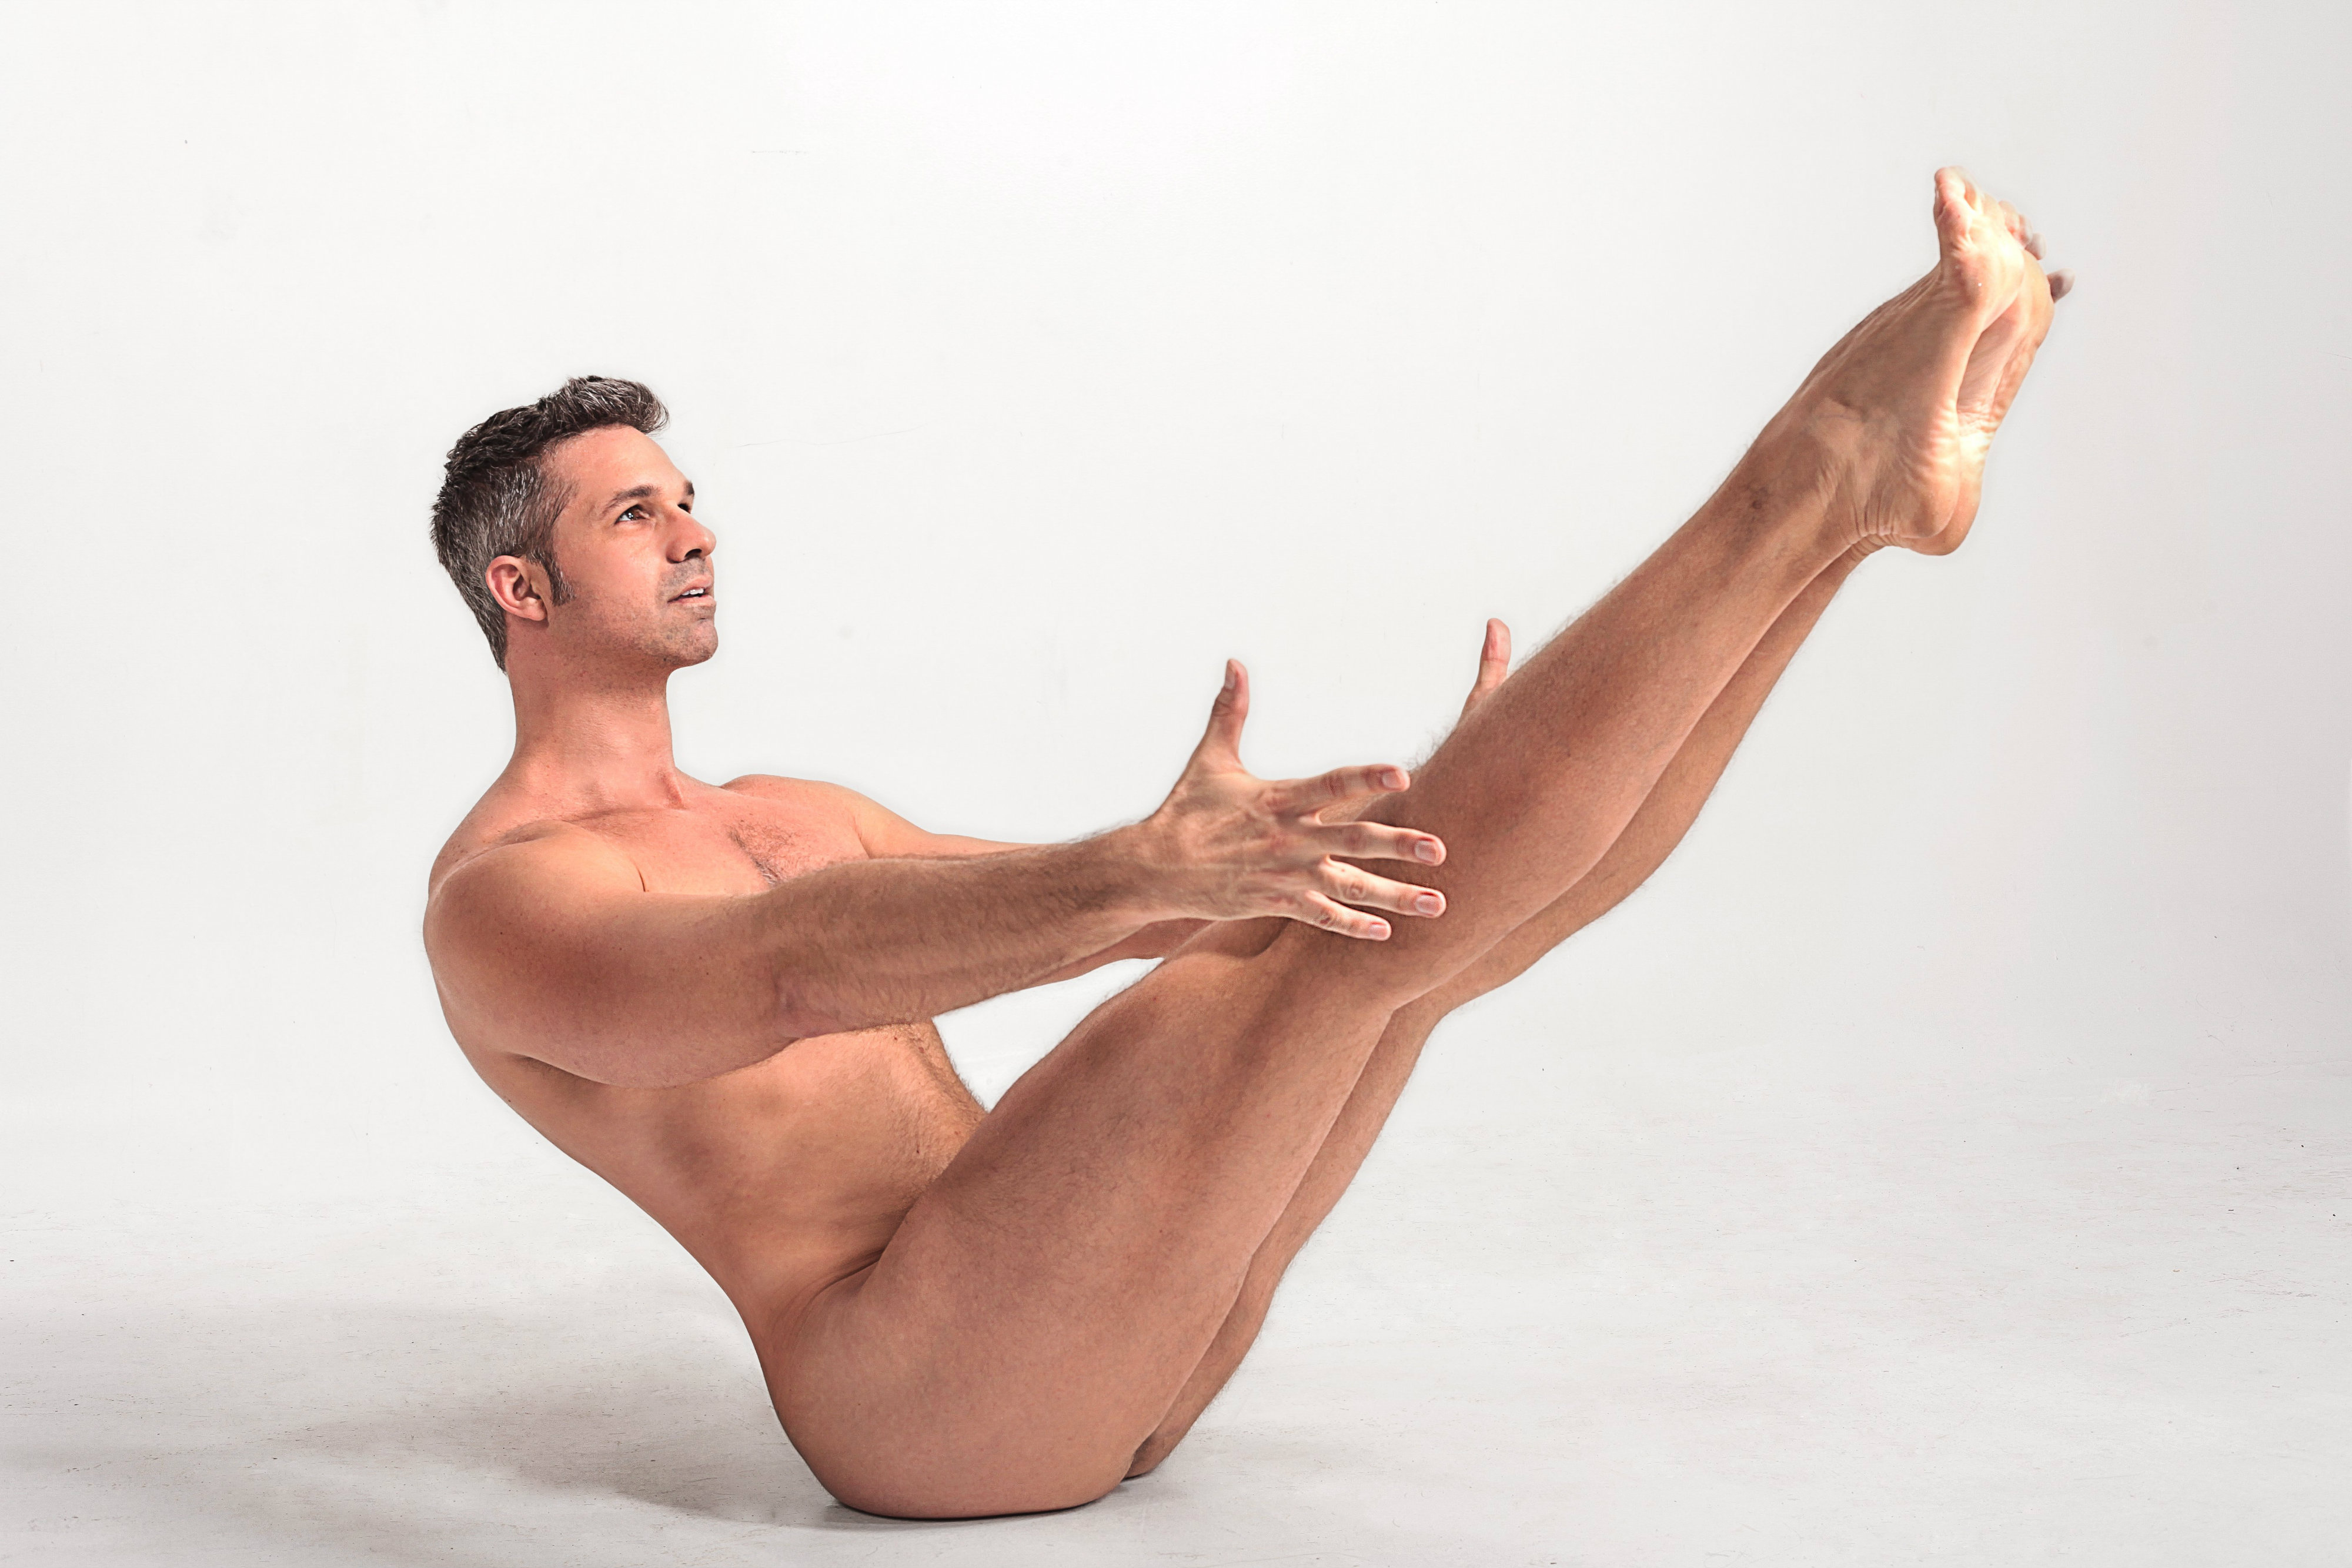 Nude yoga guy